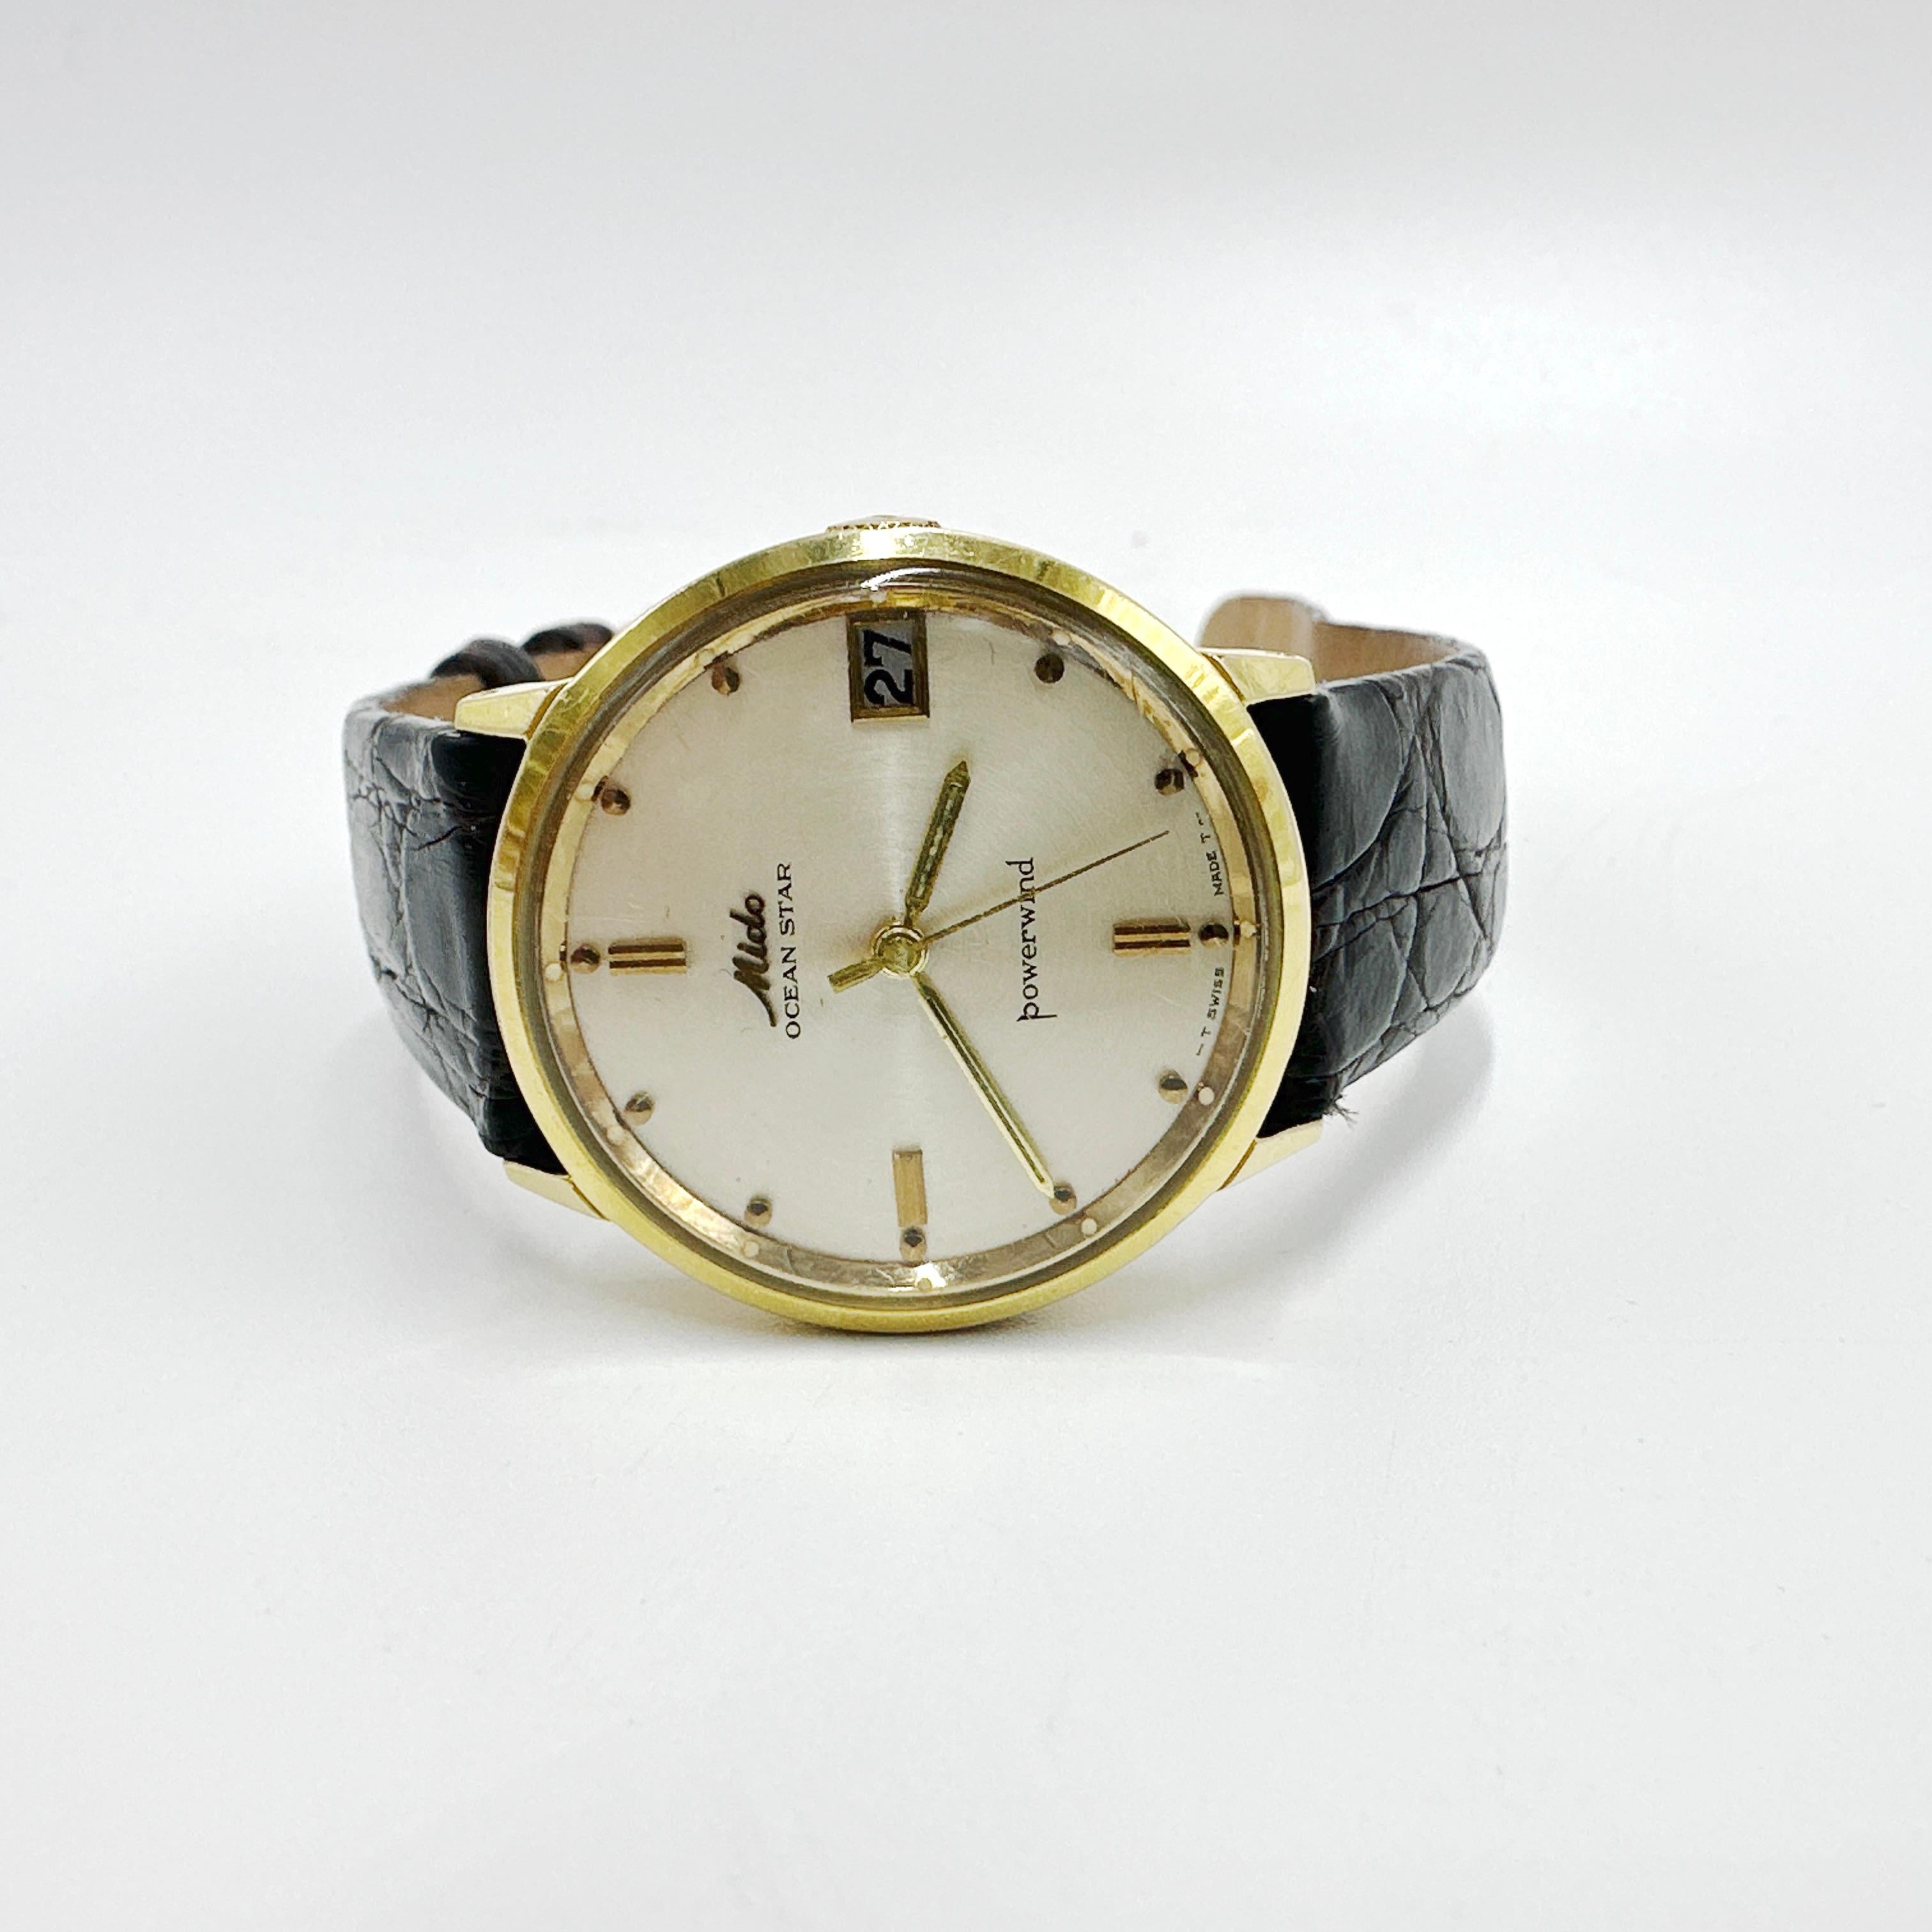 Voici une belle montre MIDO Ocean Star Powerwind 14k Gold Plated Vintage Swiss Automatic pour homme des années 1960. Cette montre suisse automatique est dotée d'une fonction date. Elle est en bon état général et garde l'heure. La sangle et la boucle